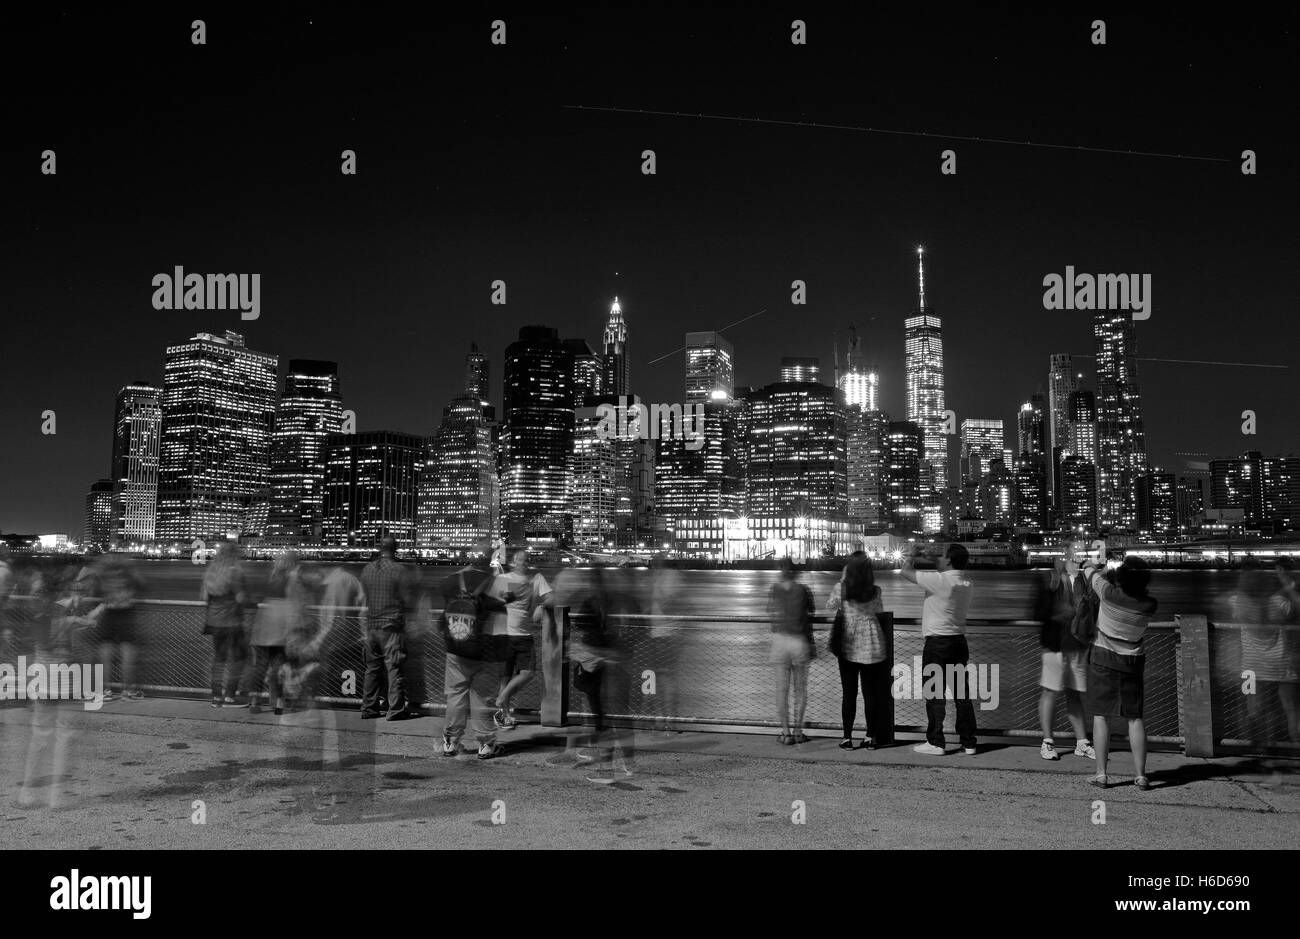 Menschen versammeln, um die Zeit Nachtansicht von lower Manhattan über den East River aus Brooklyn, NY, Vereinigte Staaten von Amerika zu bewundern. B&W Bild Stockfoto